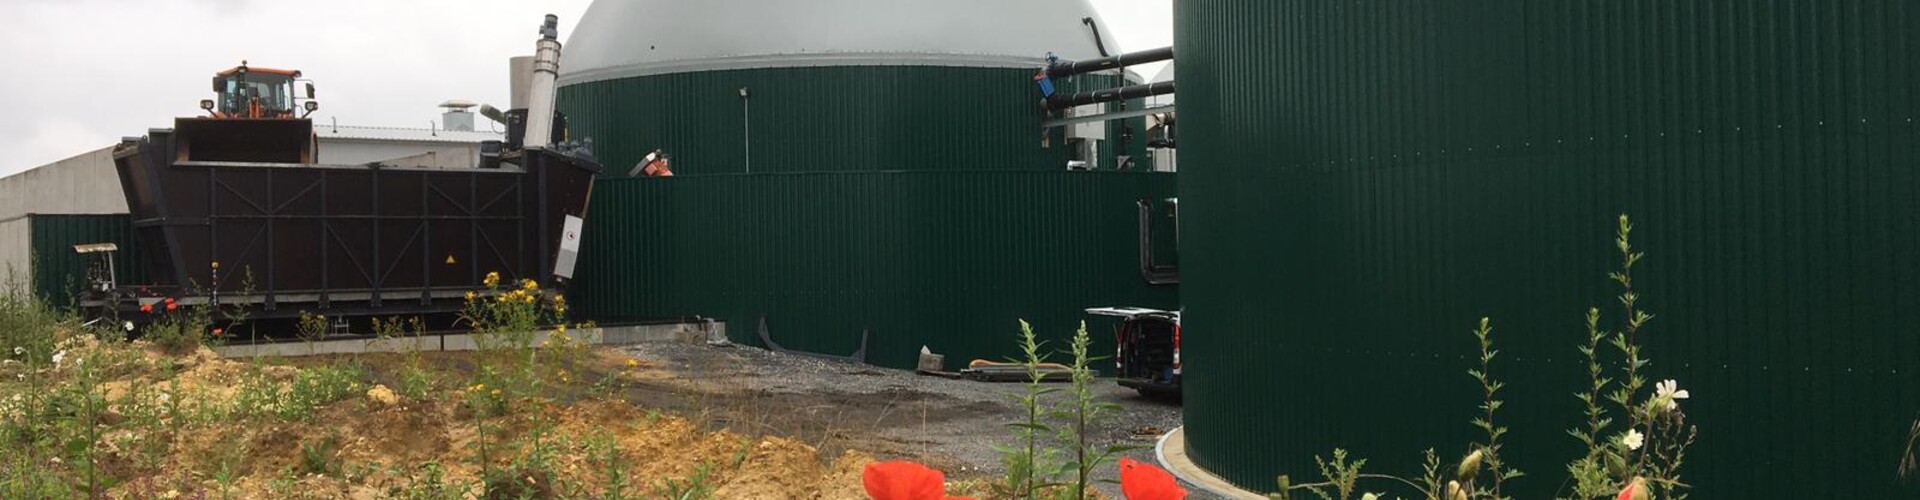 Installation de biogaz LAON, la France